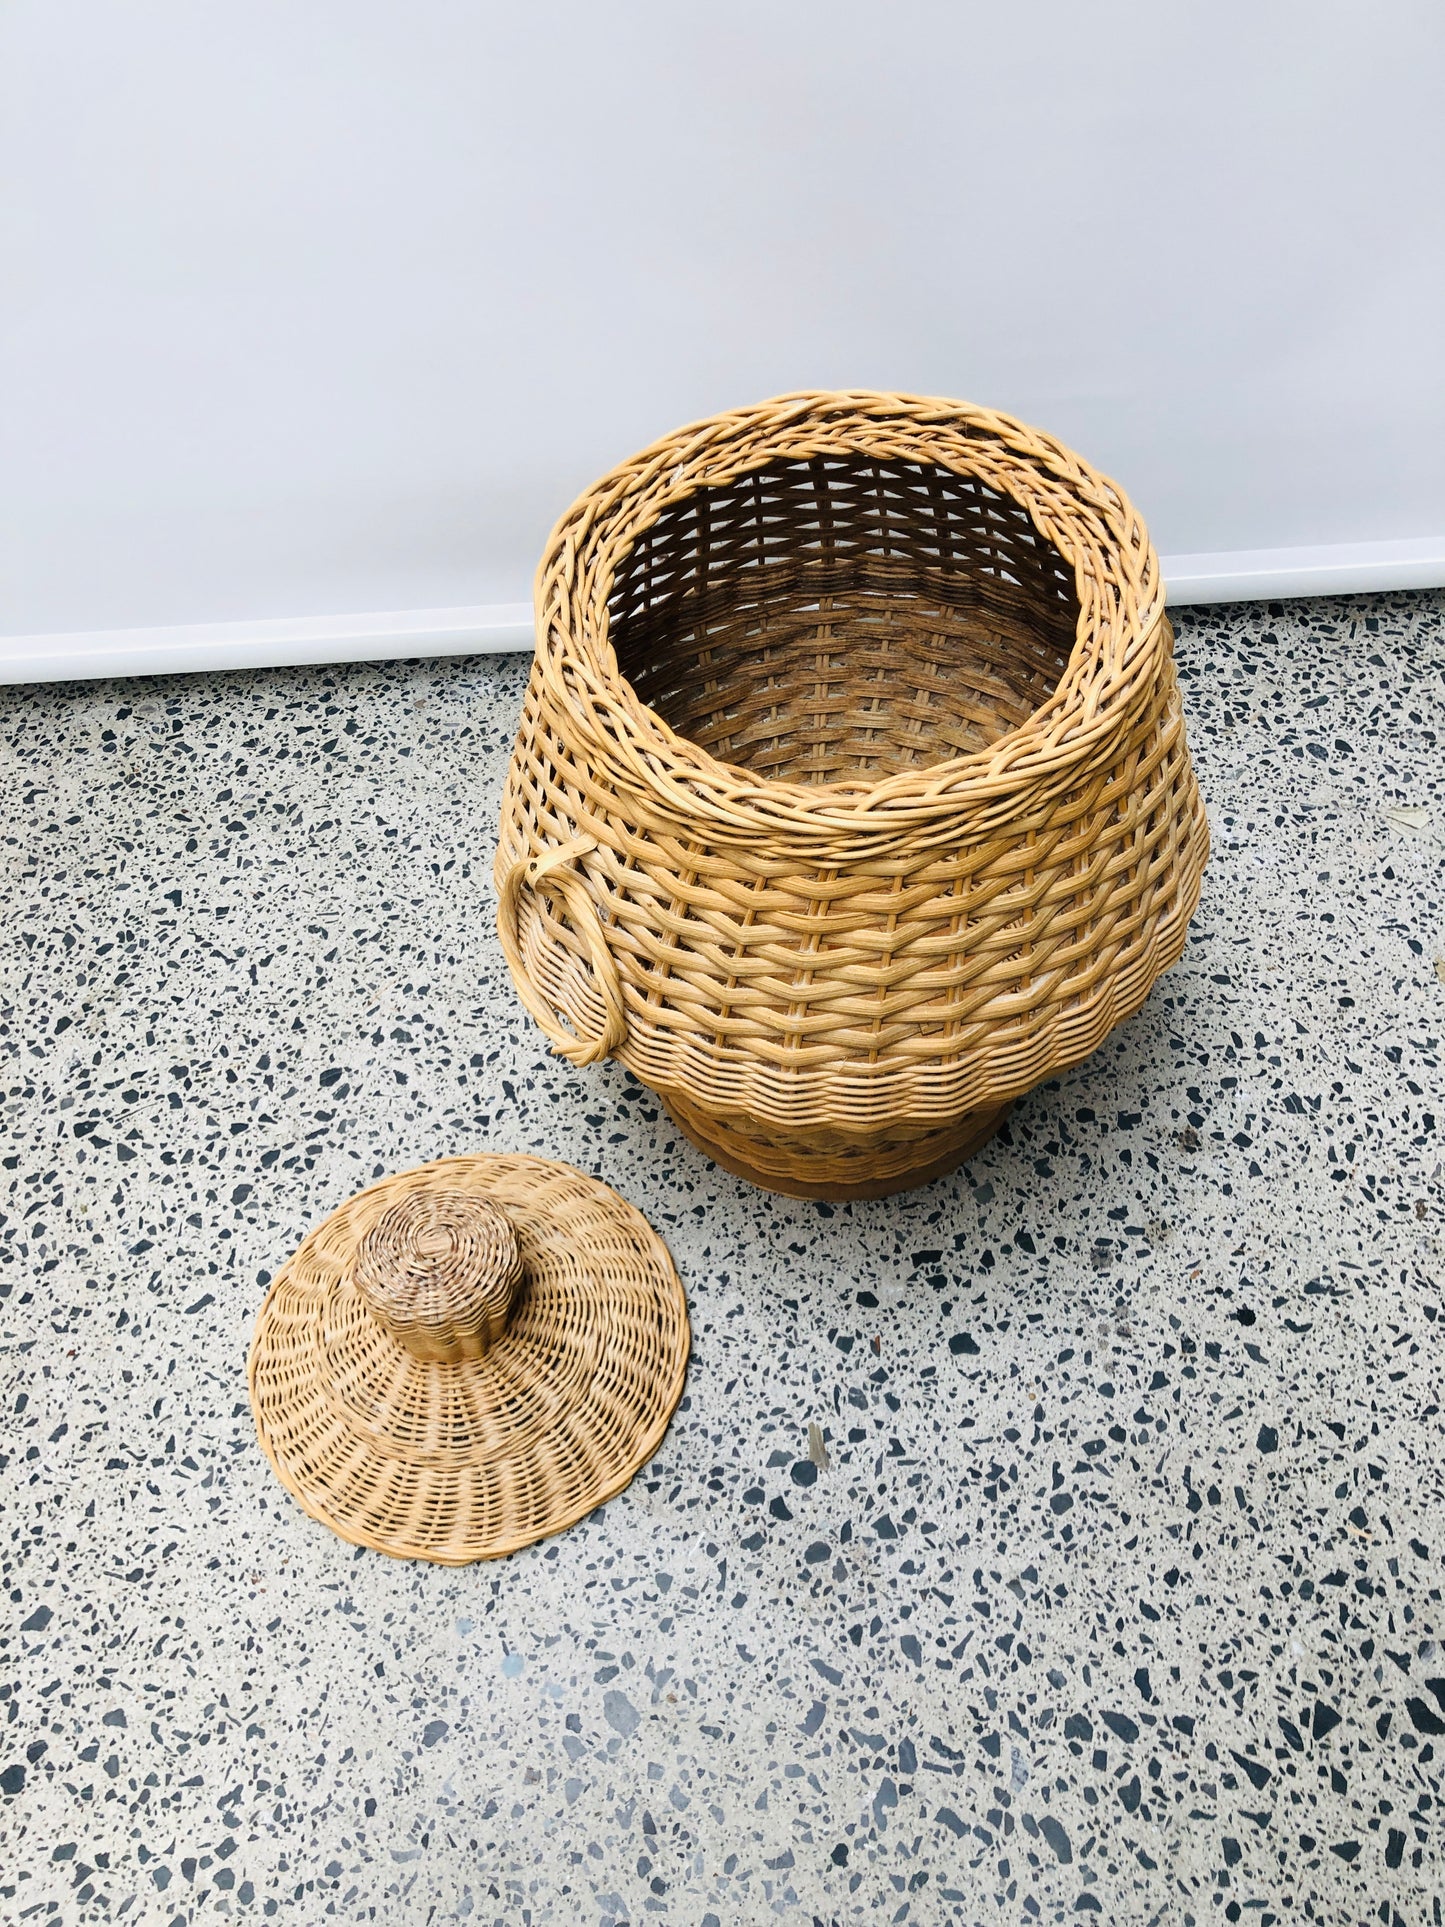 
                  
                    Basket- Laundry/ Decor (15691)
                  
                